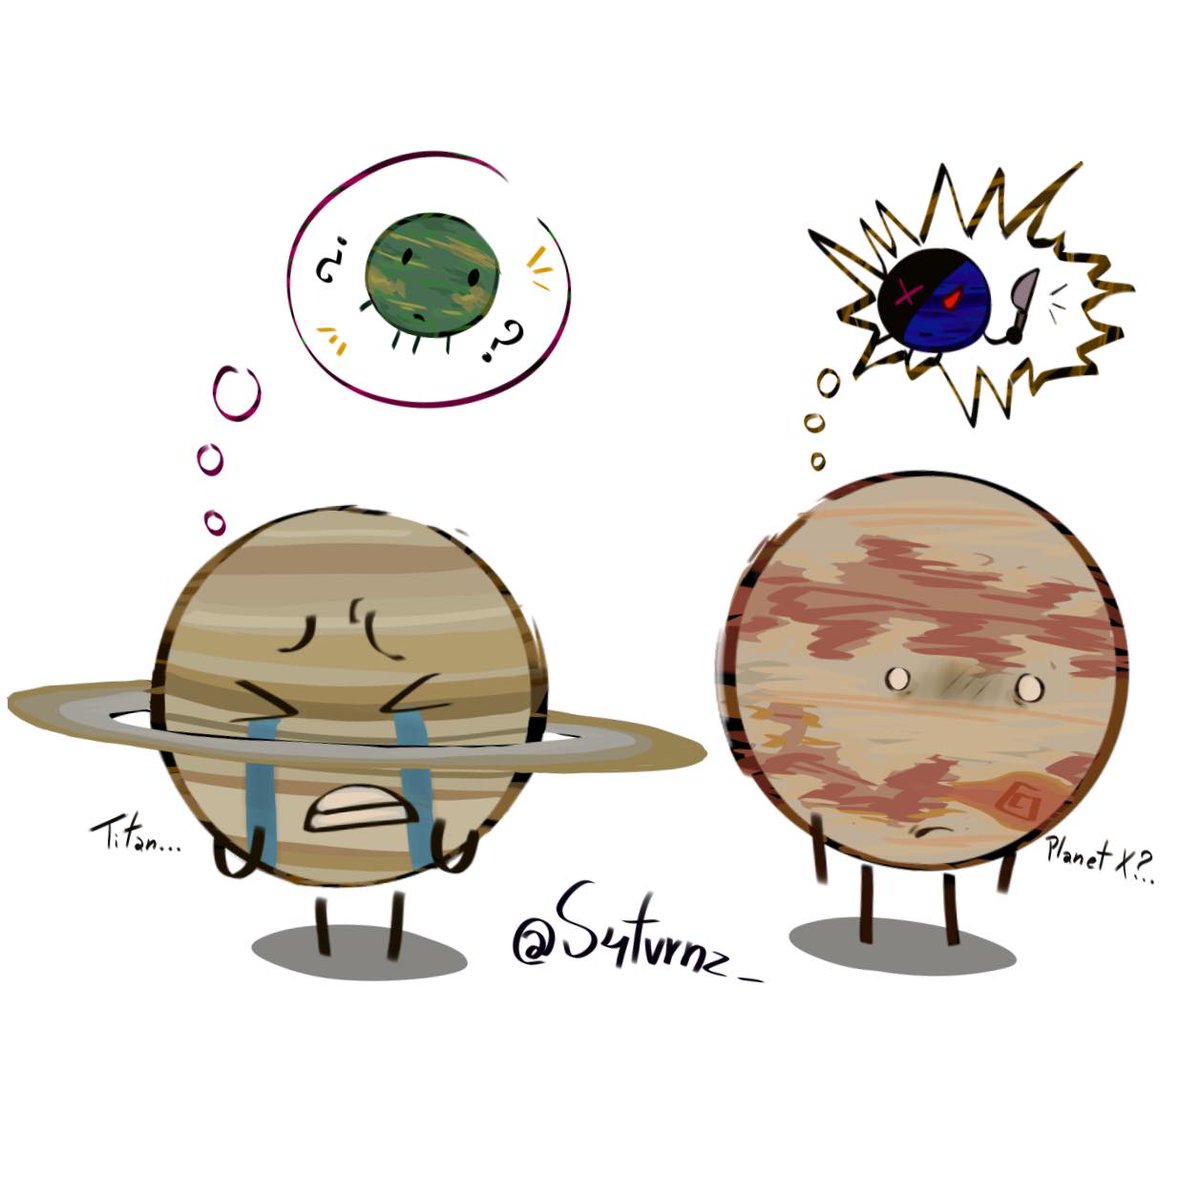 Haha, funny balls
#solarballs #art #osctwt